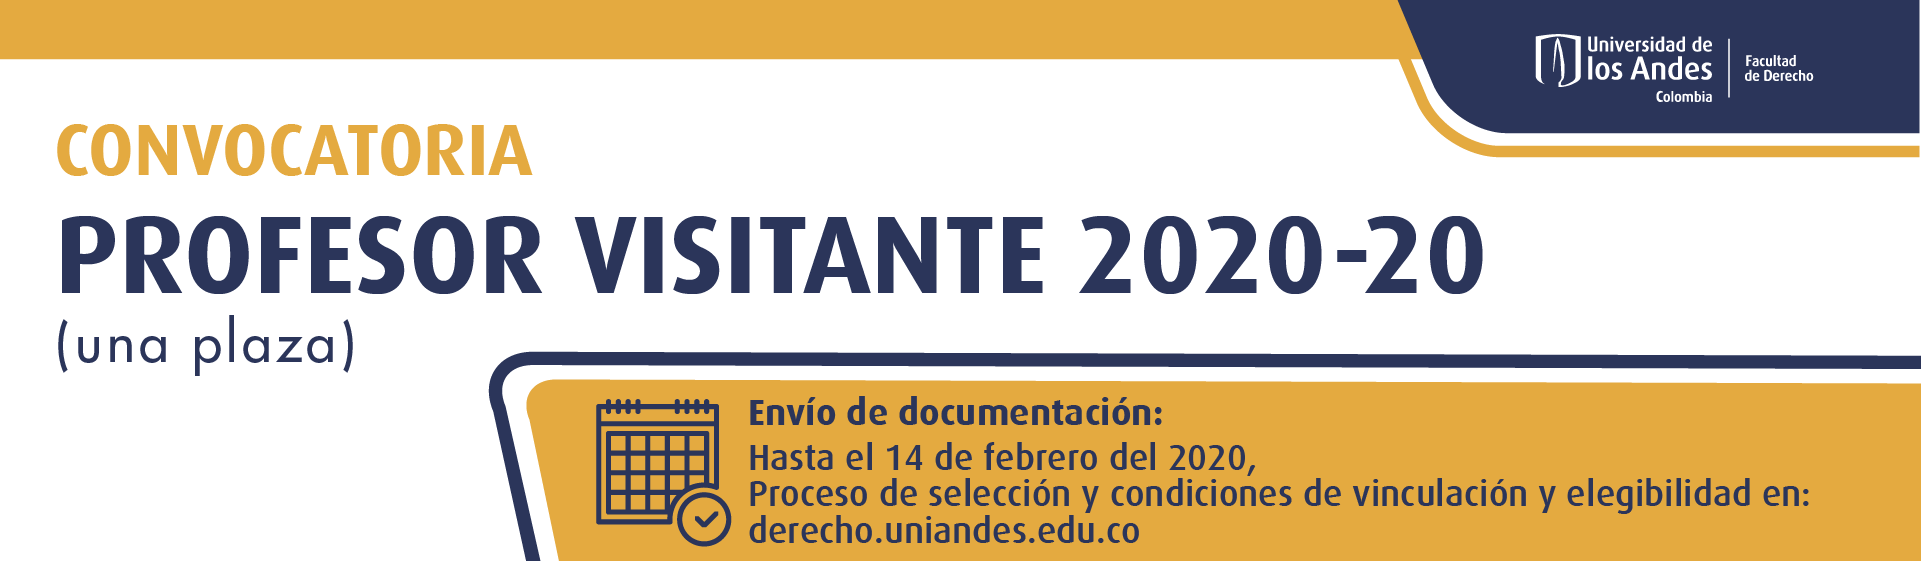 Convocatoria profesor visitante 2020-20